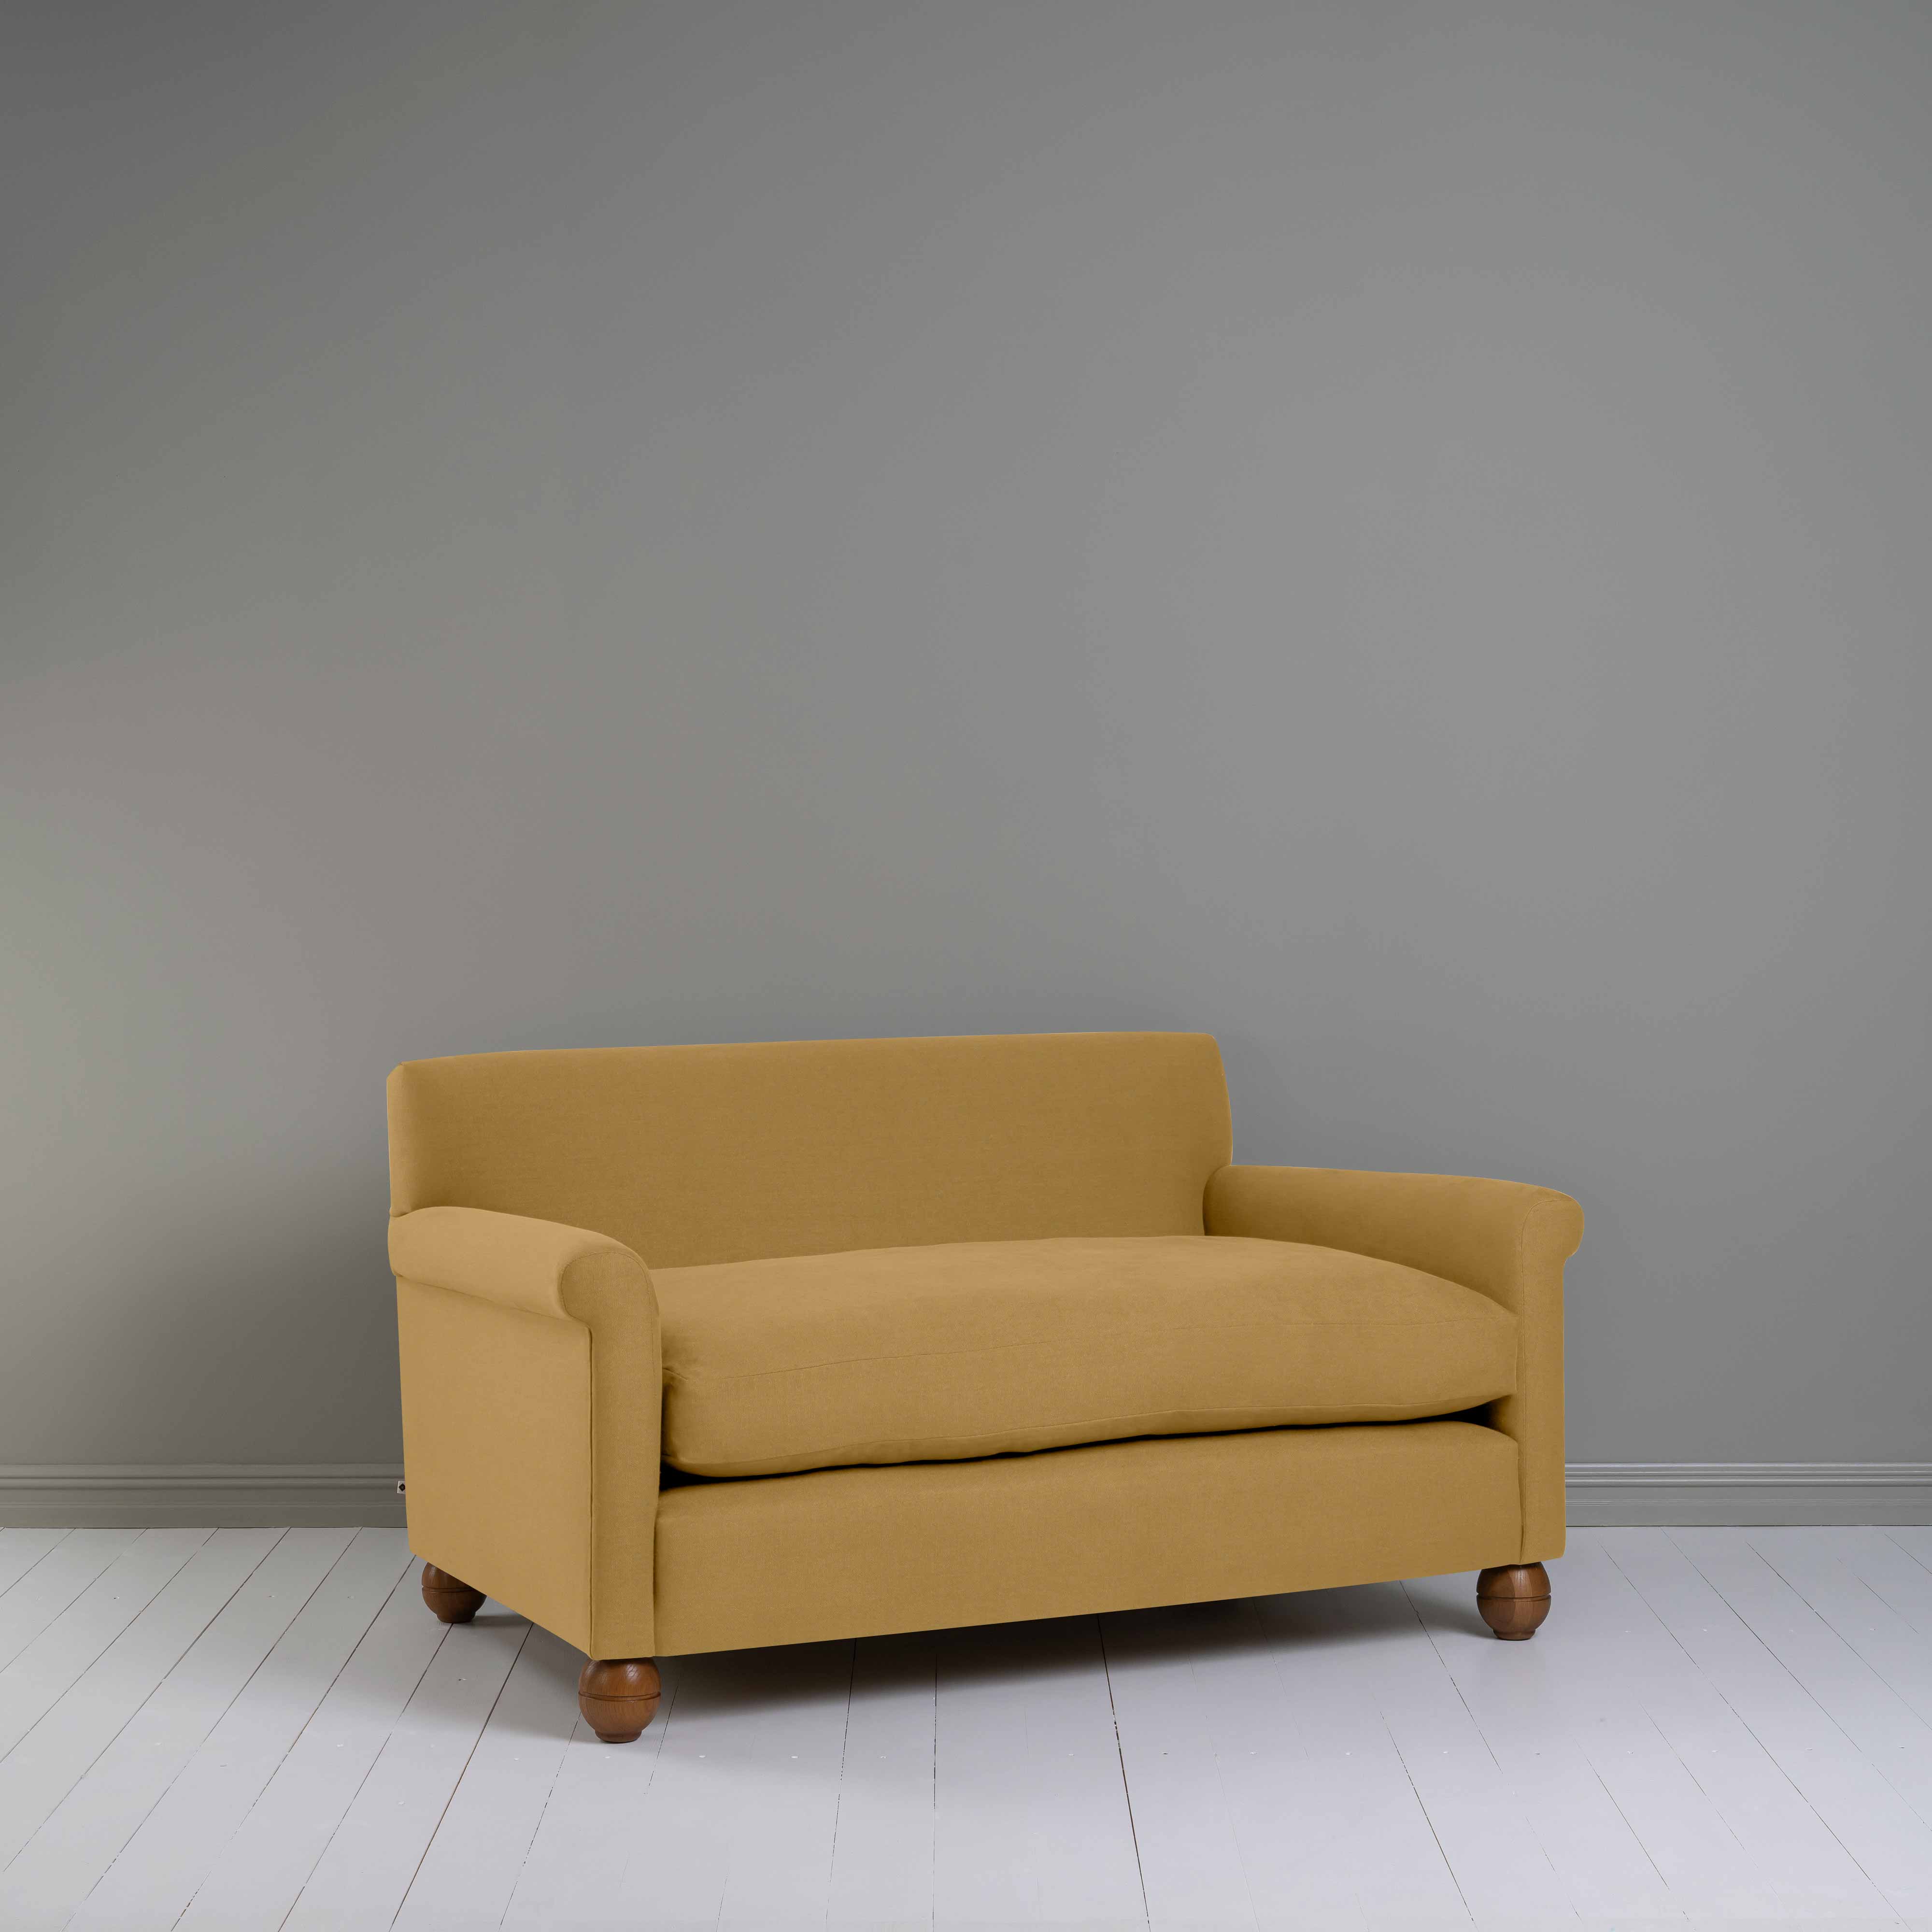  Idler 2 Seater Sofa in Laidback Linen Ochre 